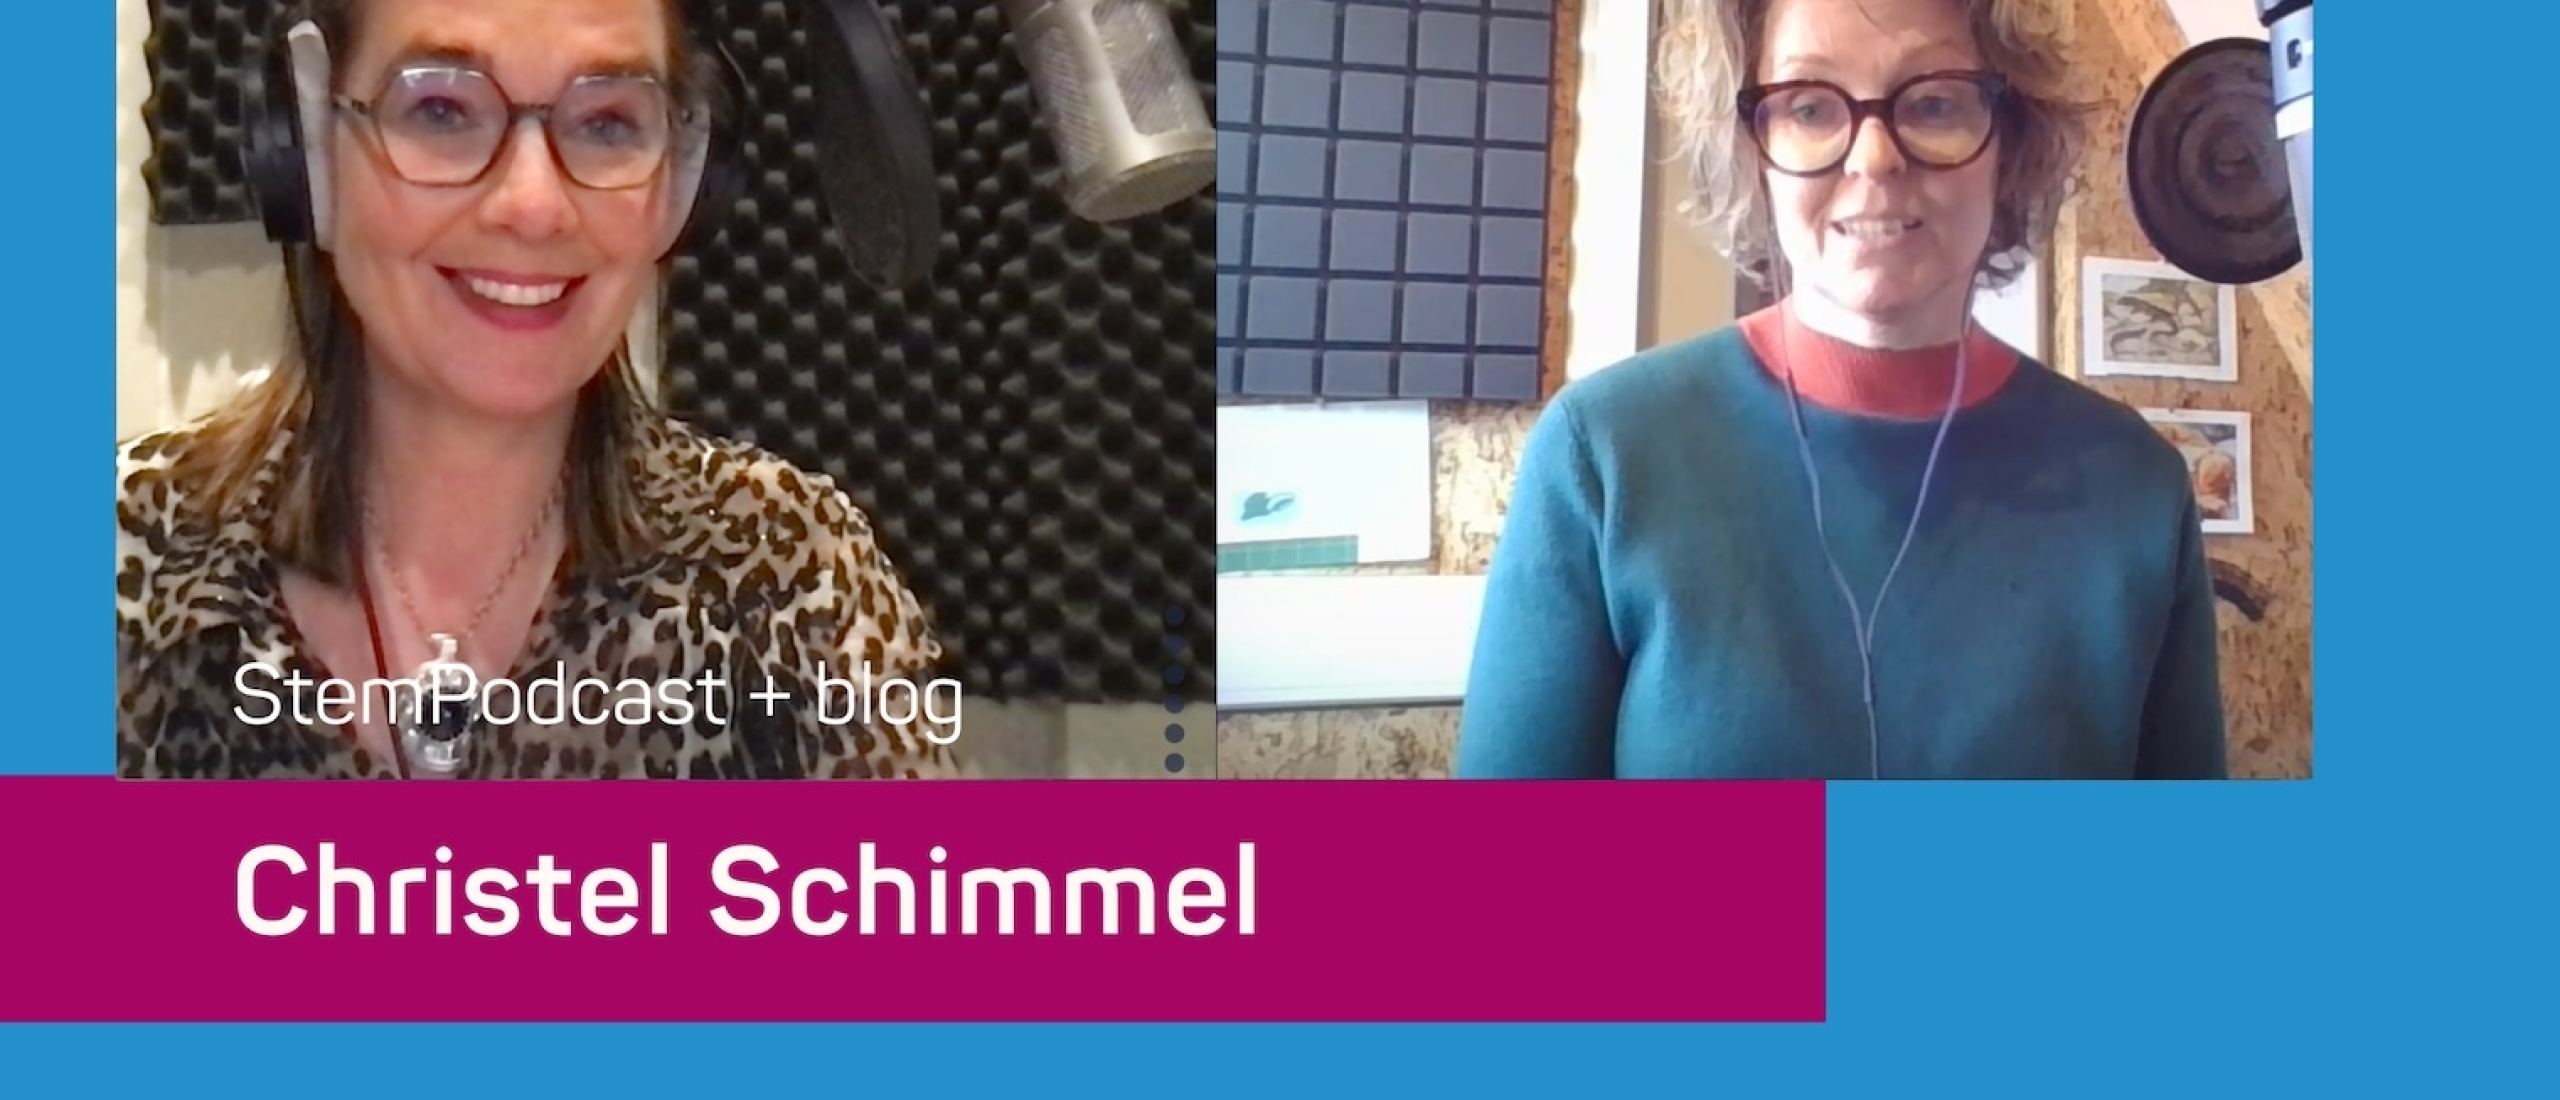 Luisterboekenspecialist en voice-over Christel Schimmel in de StemPodcast: ‘Elke ‘n’ uitspreken. Dat vind ik echt knijterlelijk’